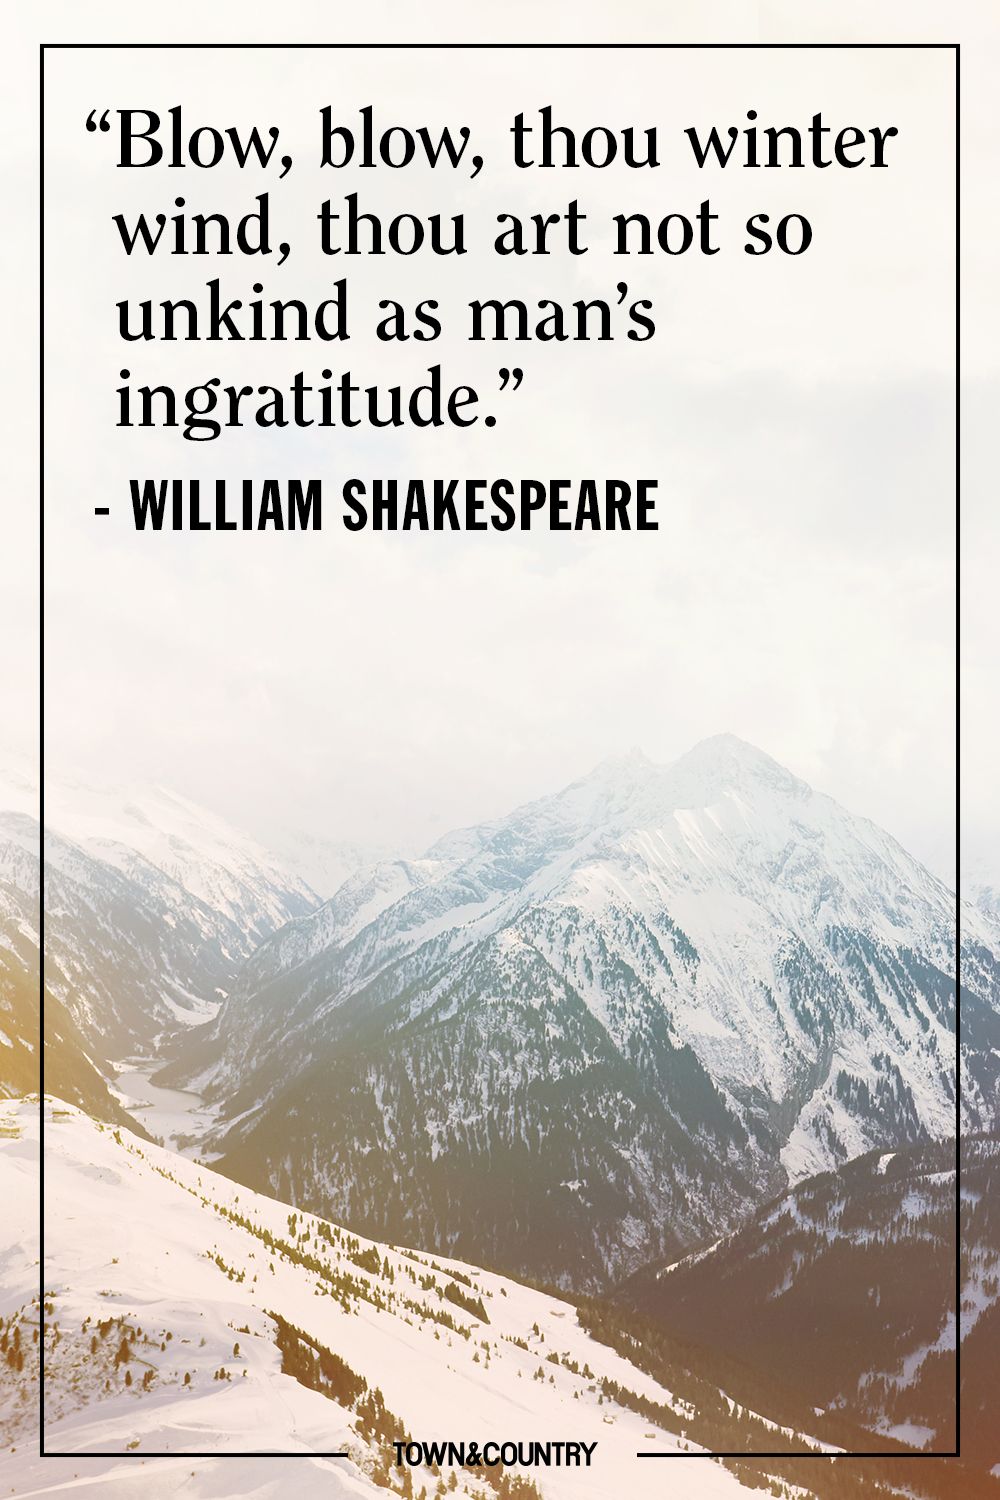 William shakespeare zitate englisch